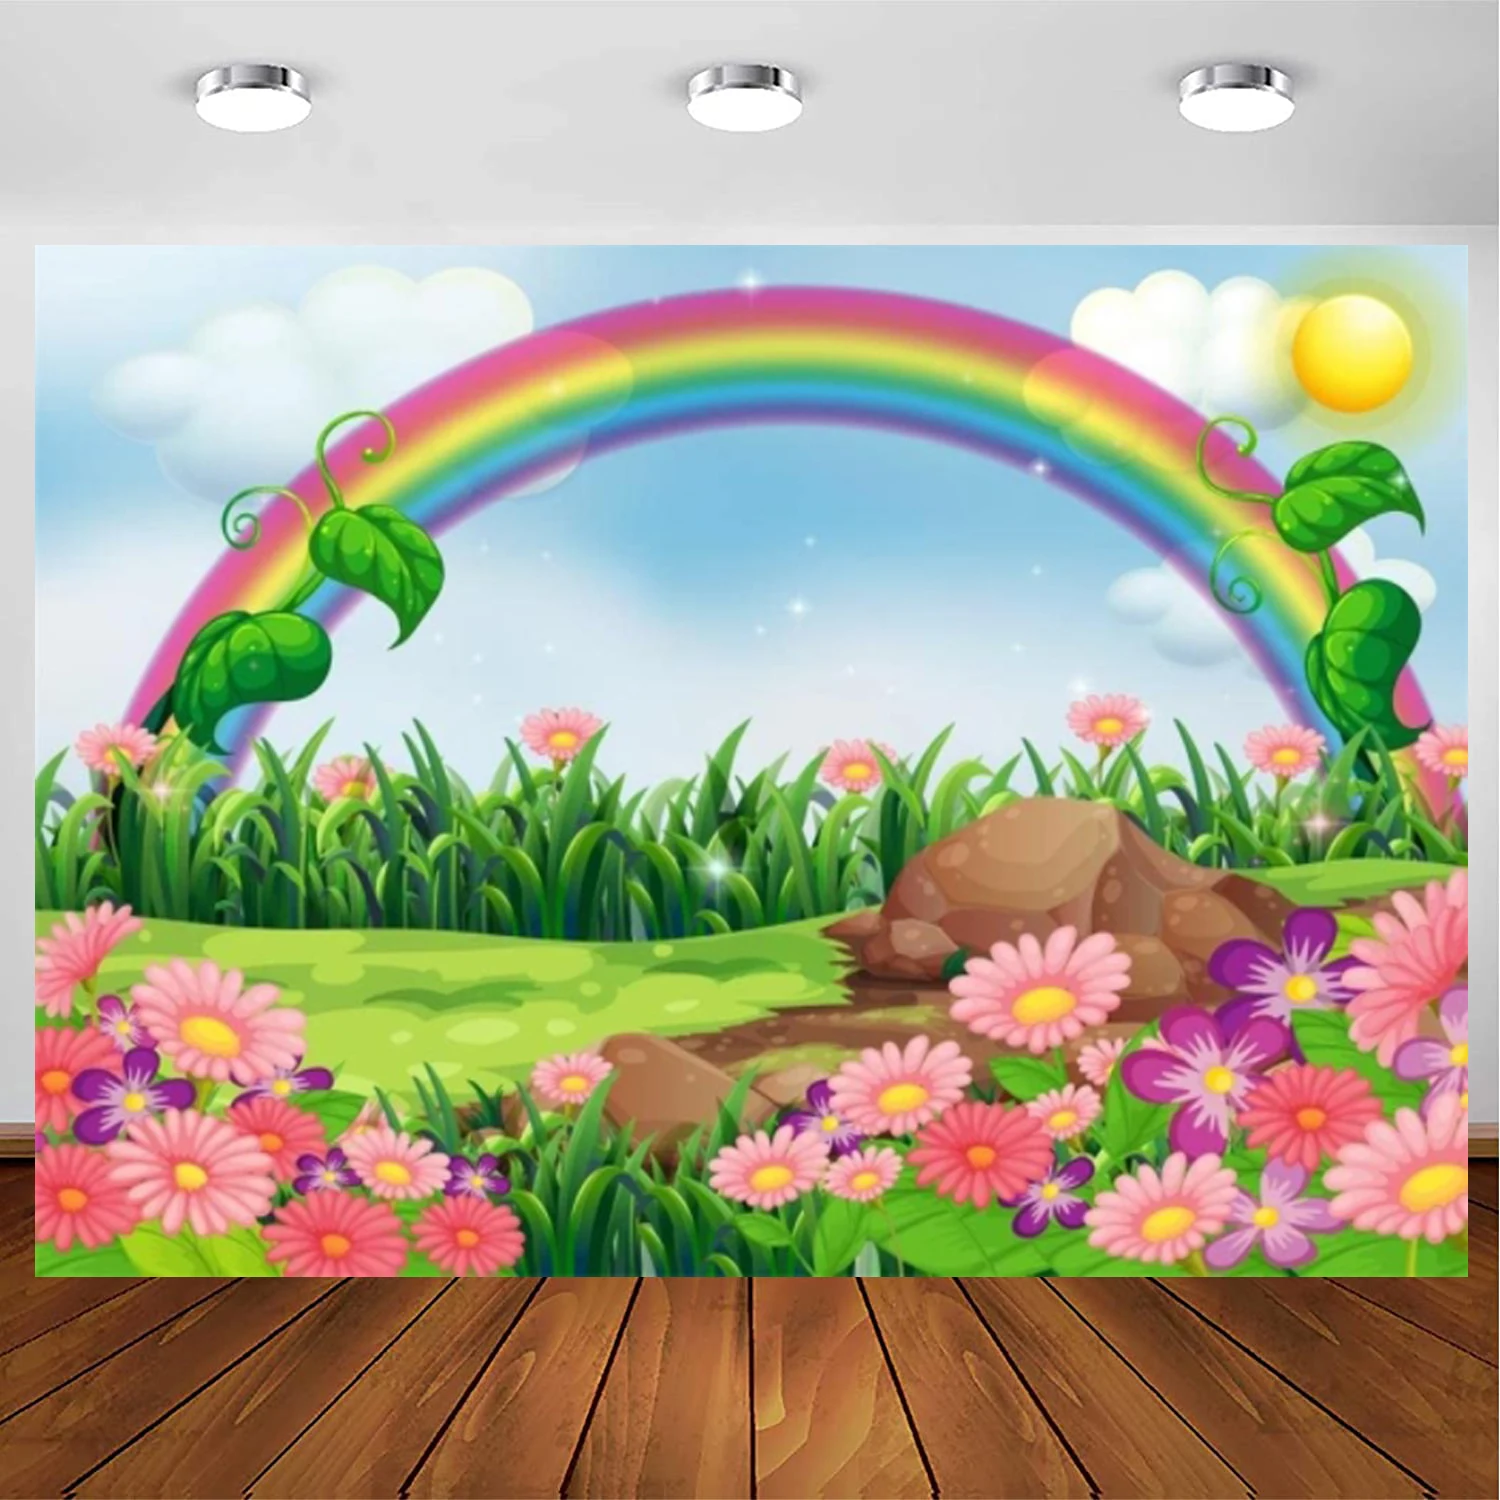 

Мультяшный весенний пейзаж фон абстрактная Радуга Луг Цветение цветы фотография Фон сладкий цветок небо облака